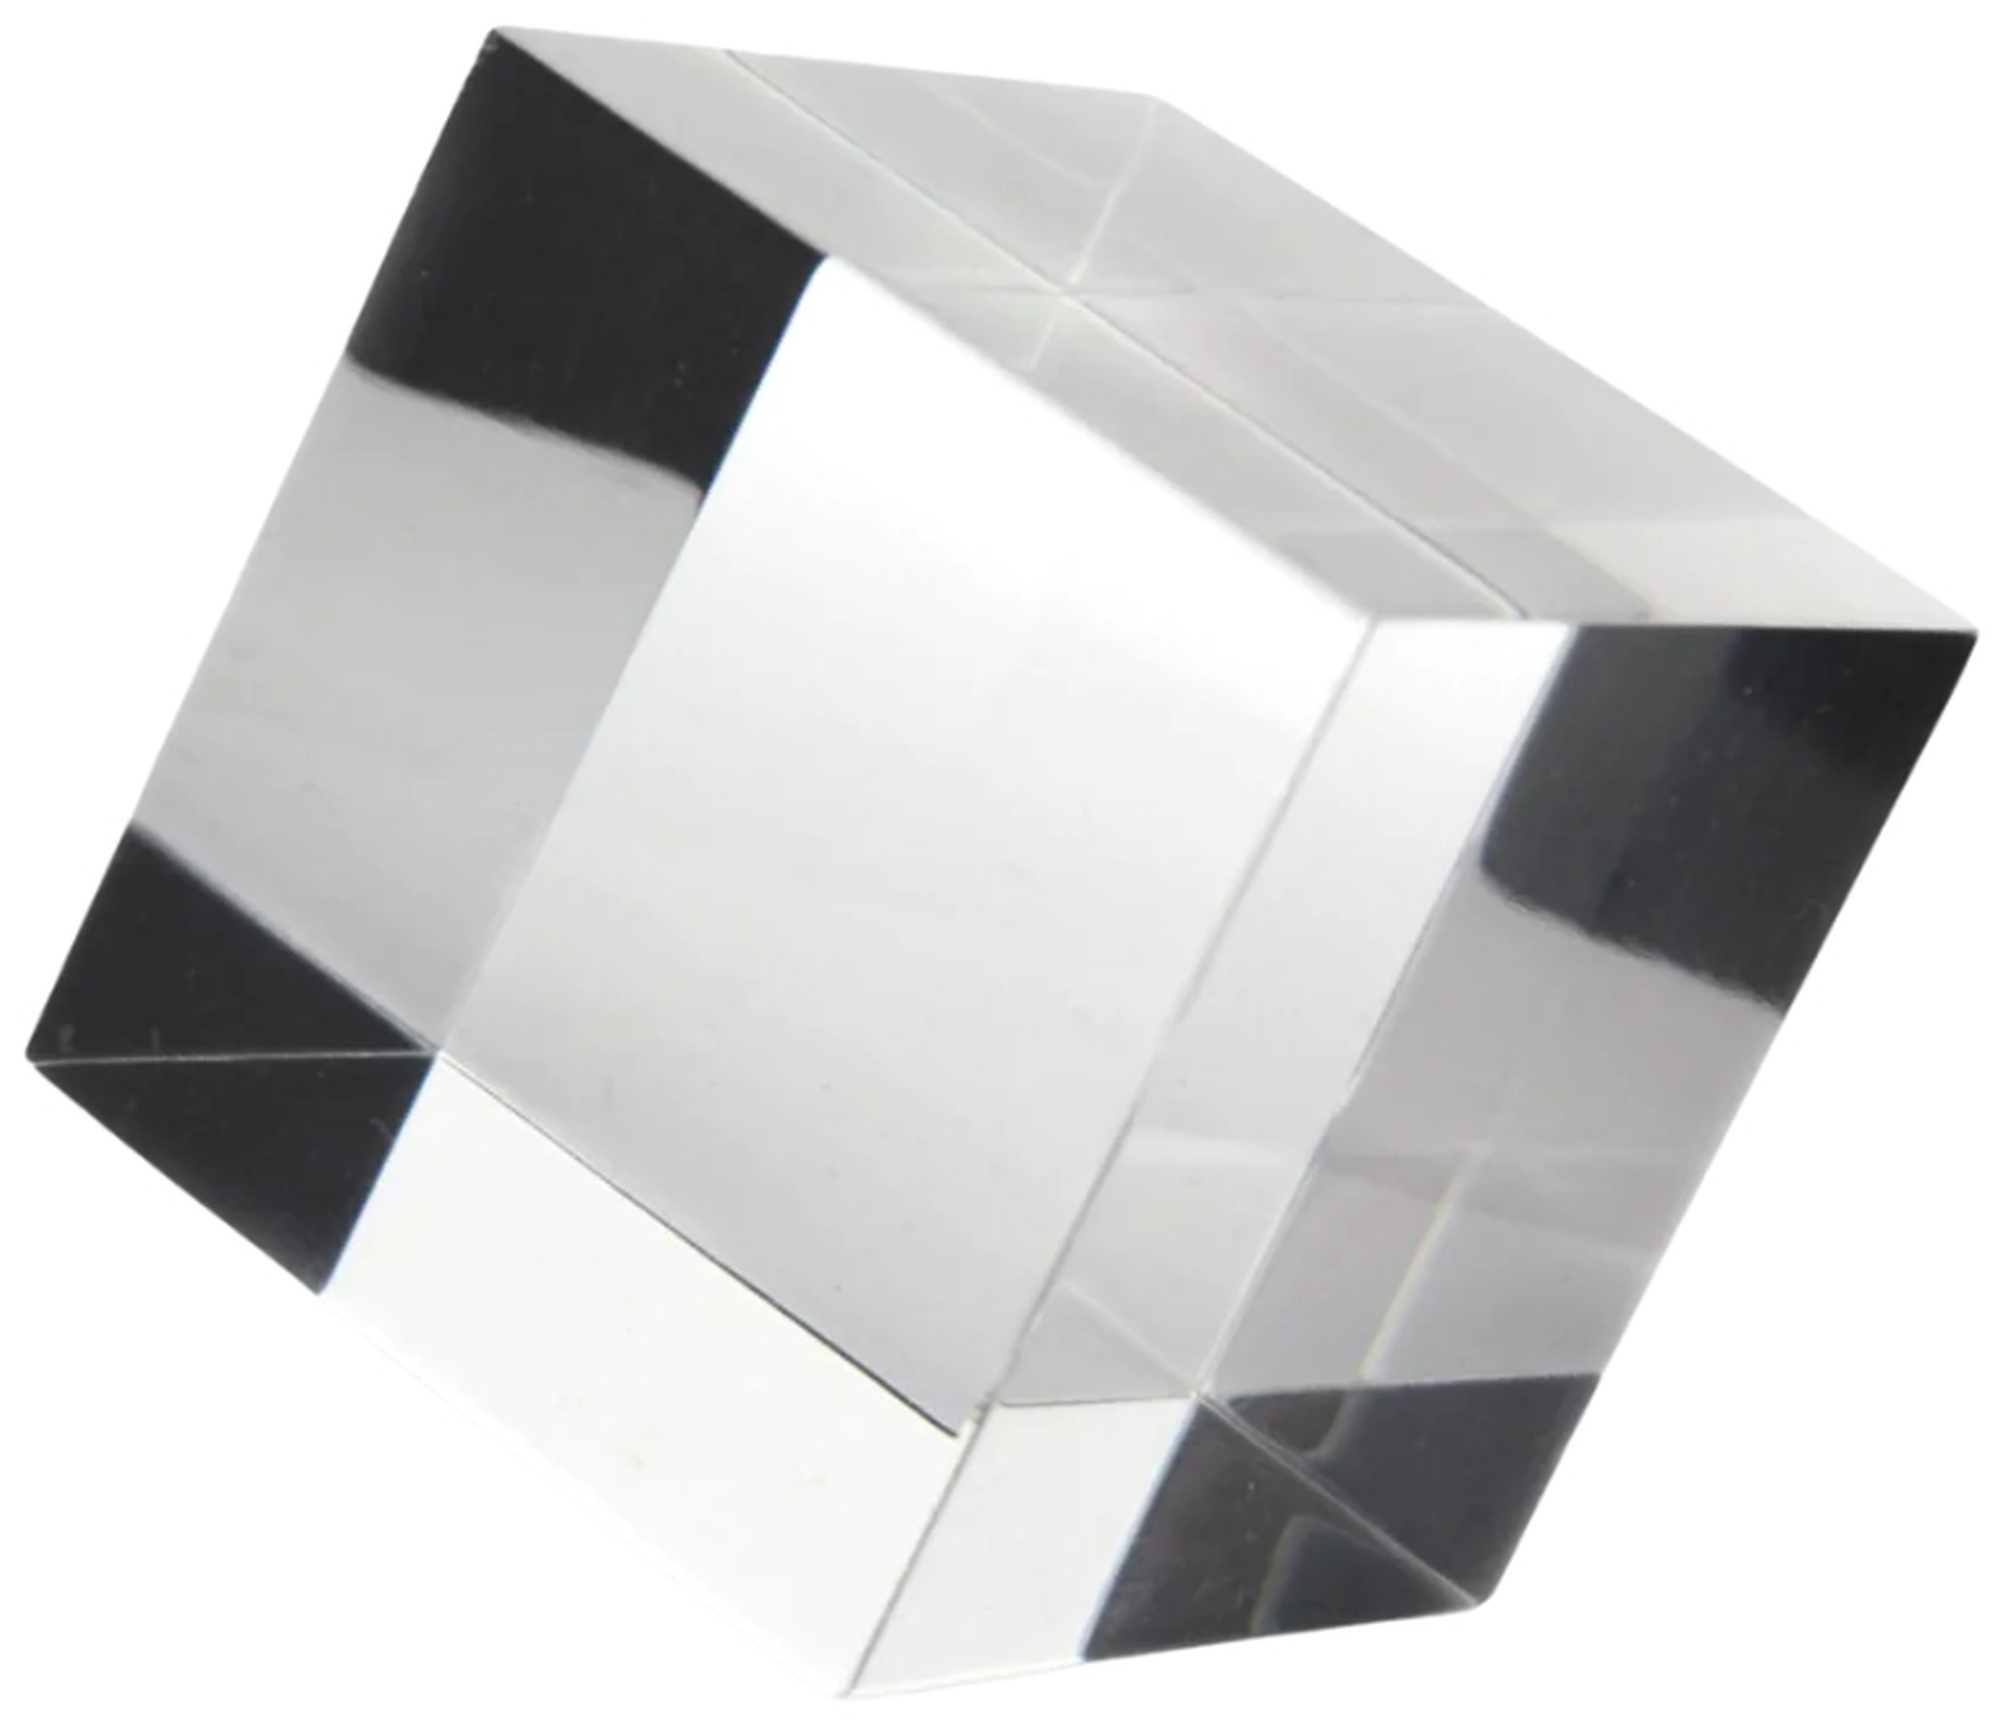 Dispersionsprisma "CMY Cube: Die Präsenz des Würfels"